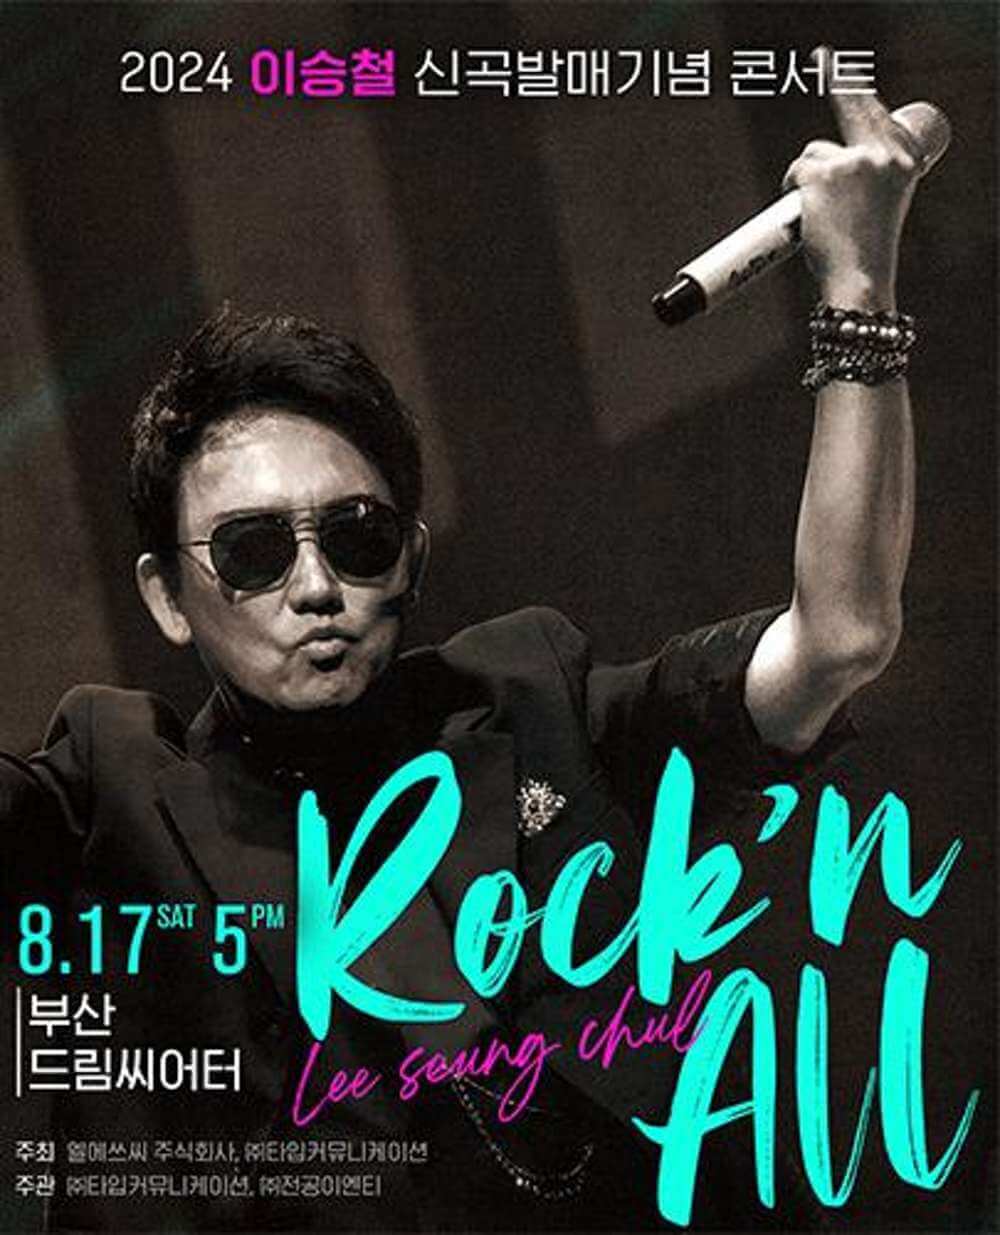 2024 이승철 신곡발매기념 콘서트 “Rock'n All” - 부산